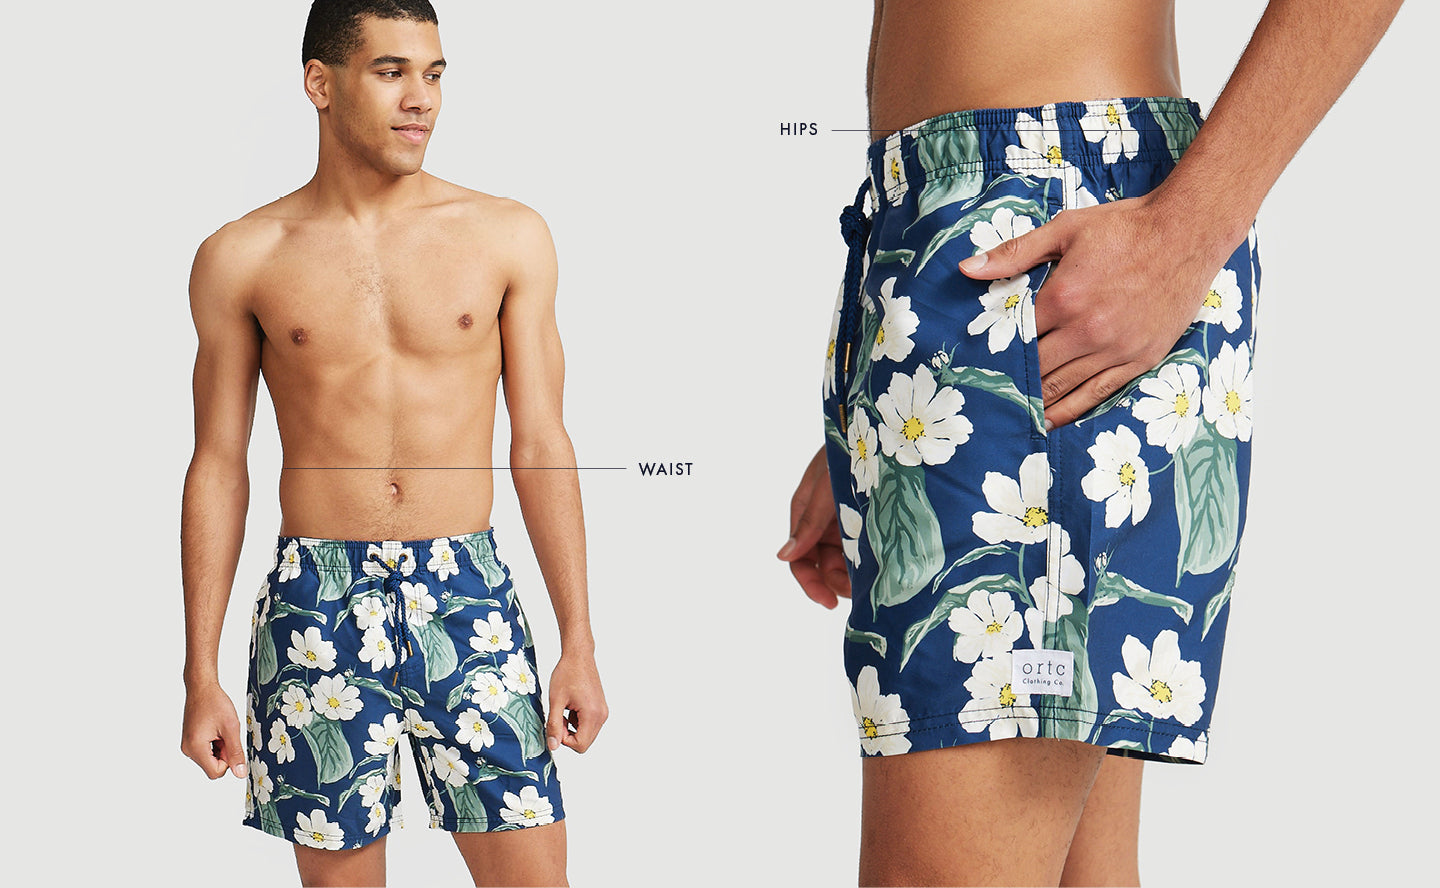 Portsea Blue Swim Shorts – ORTC Clothing Co